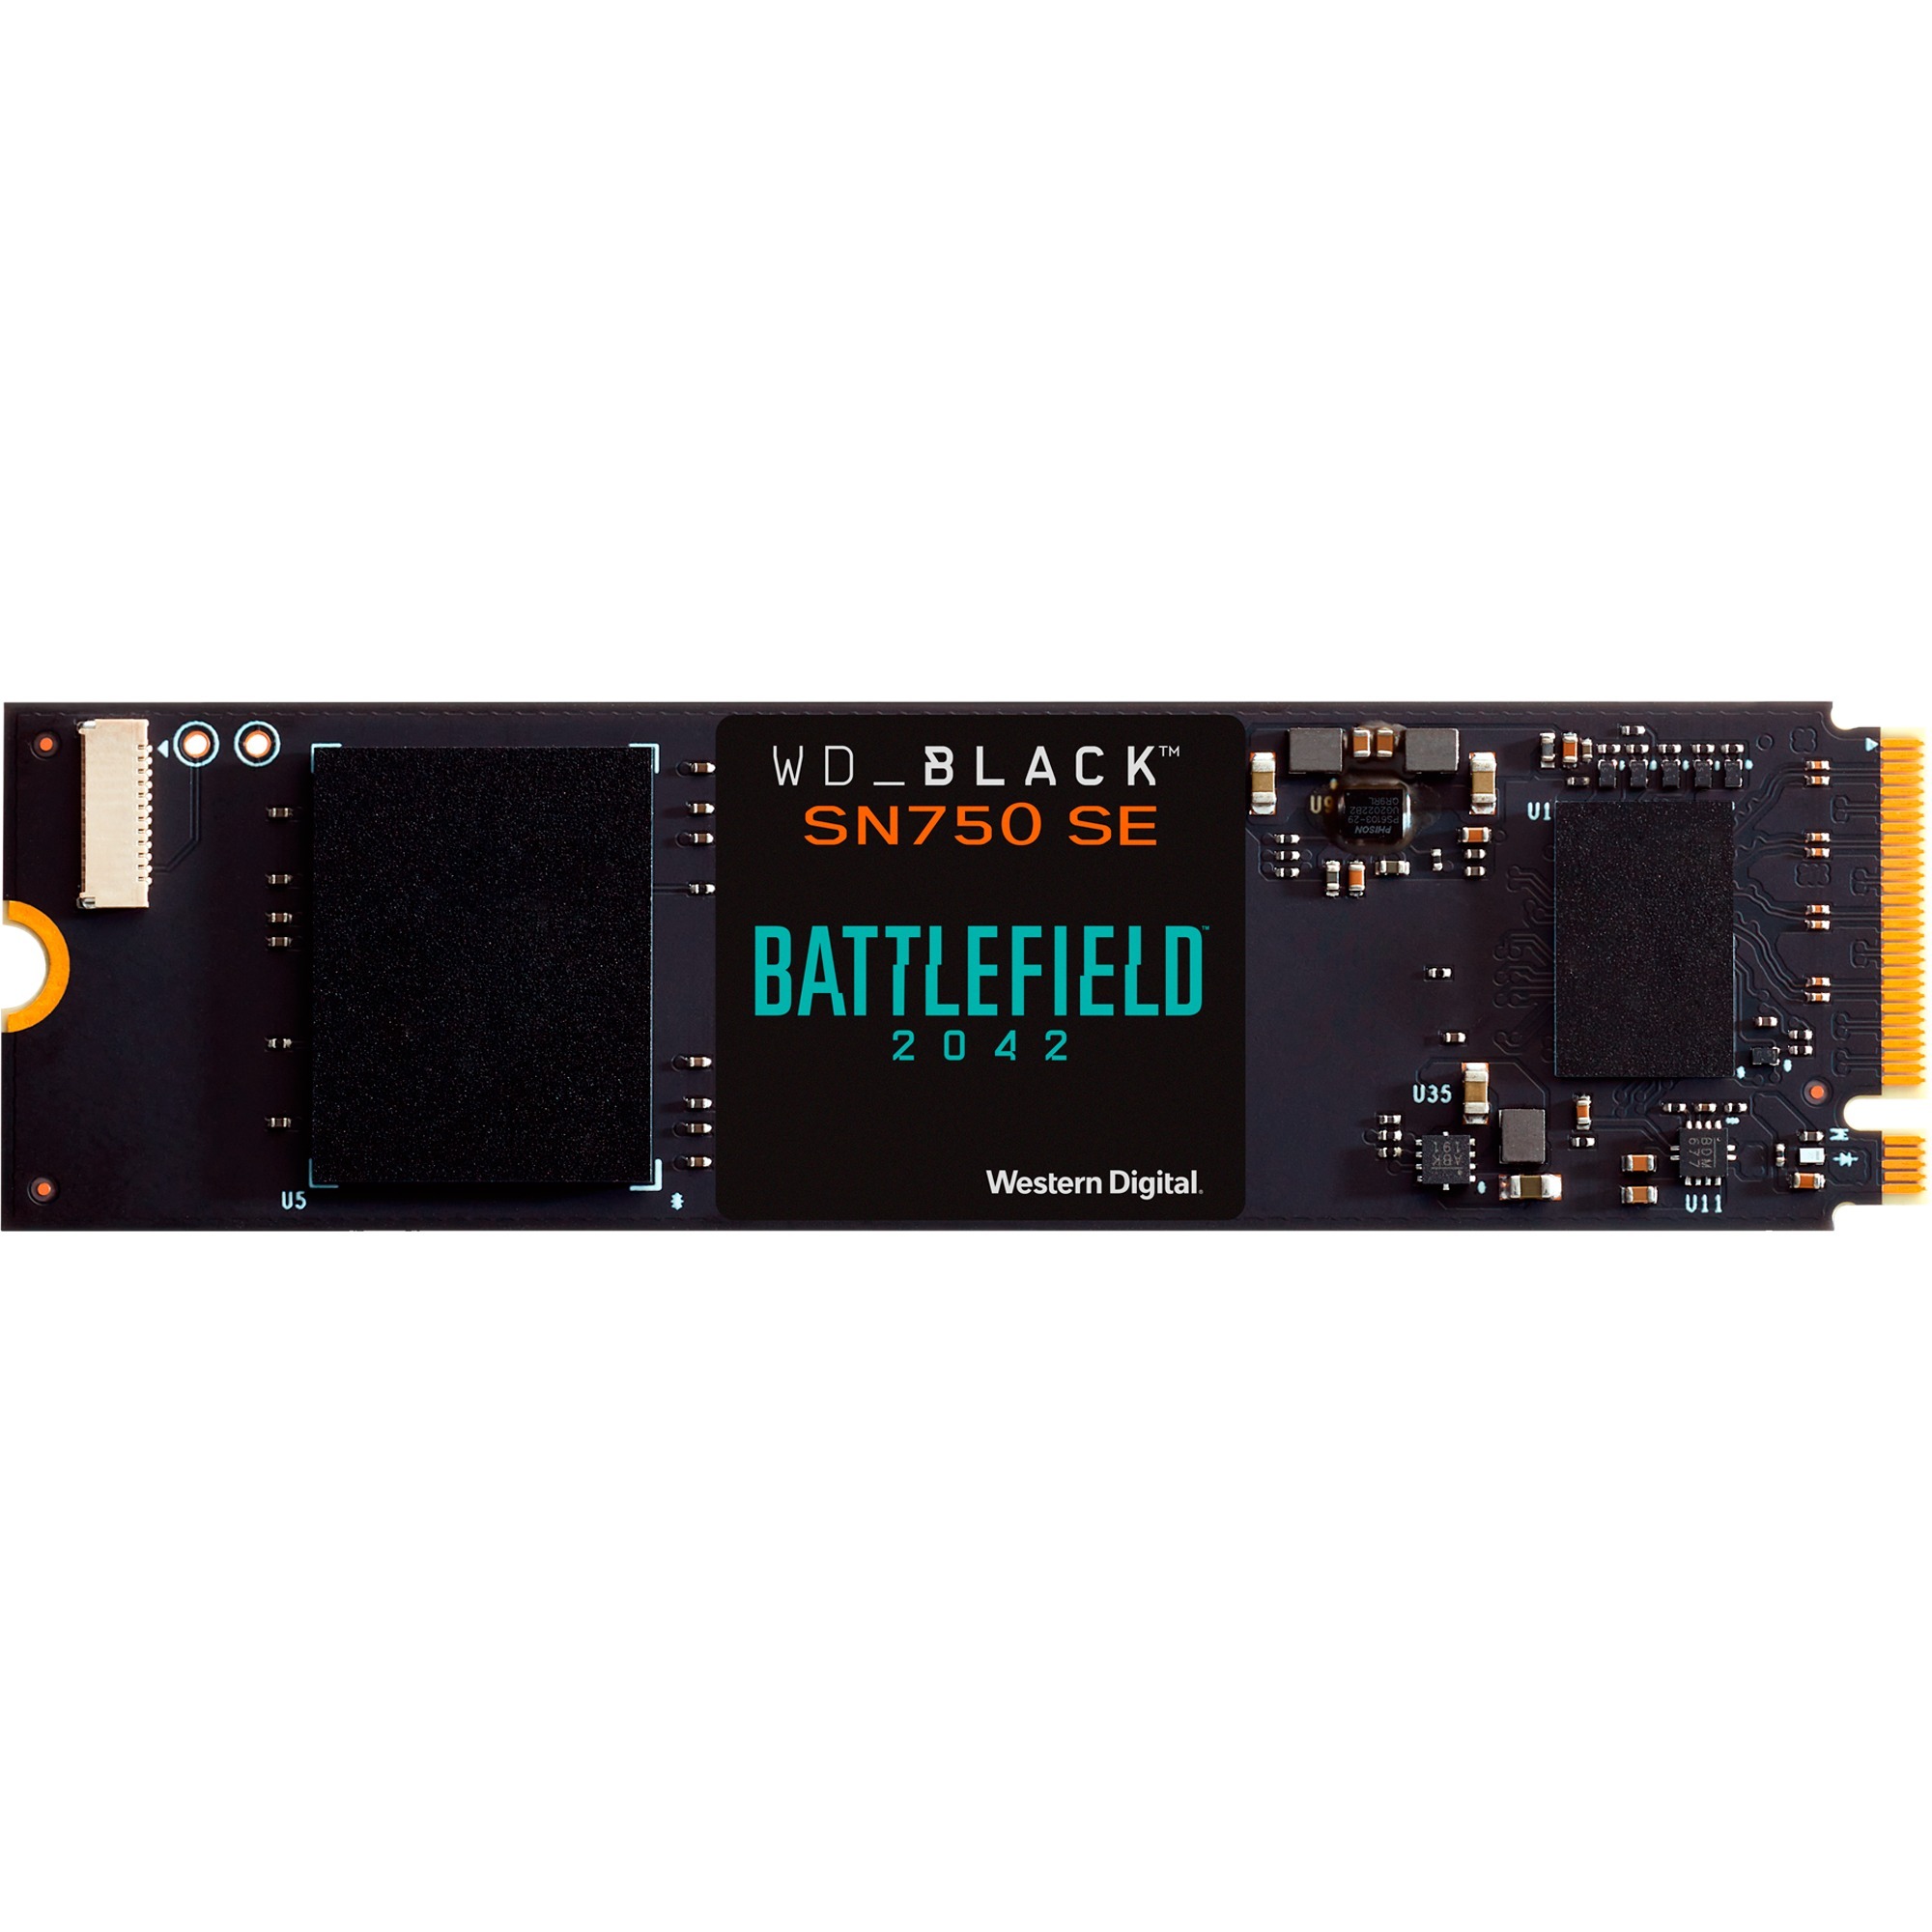 Image of Alternate - Black SN750 SE 1 TB - Battlefield 2042 PC Game Code Bundle, SSD online einkaufen bei Alternate